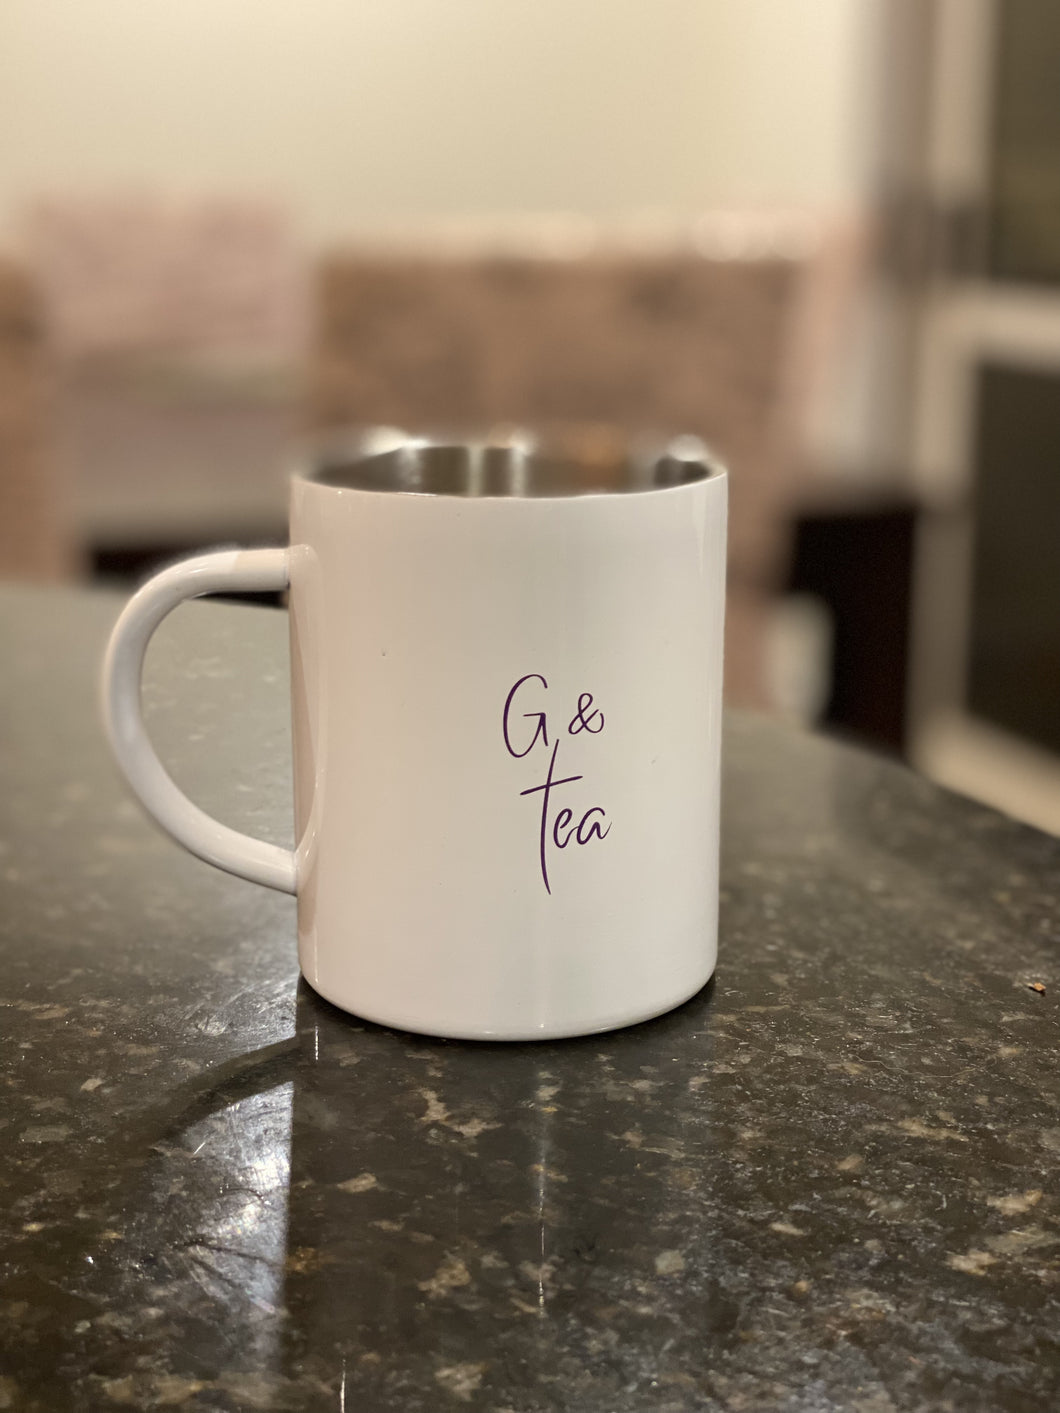 G & tea thermal mug